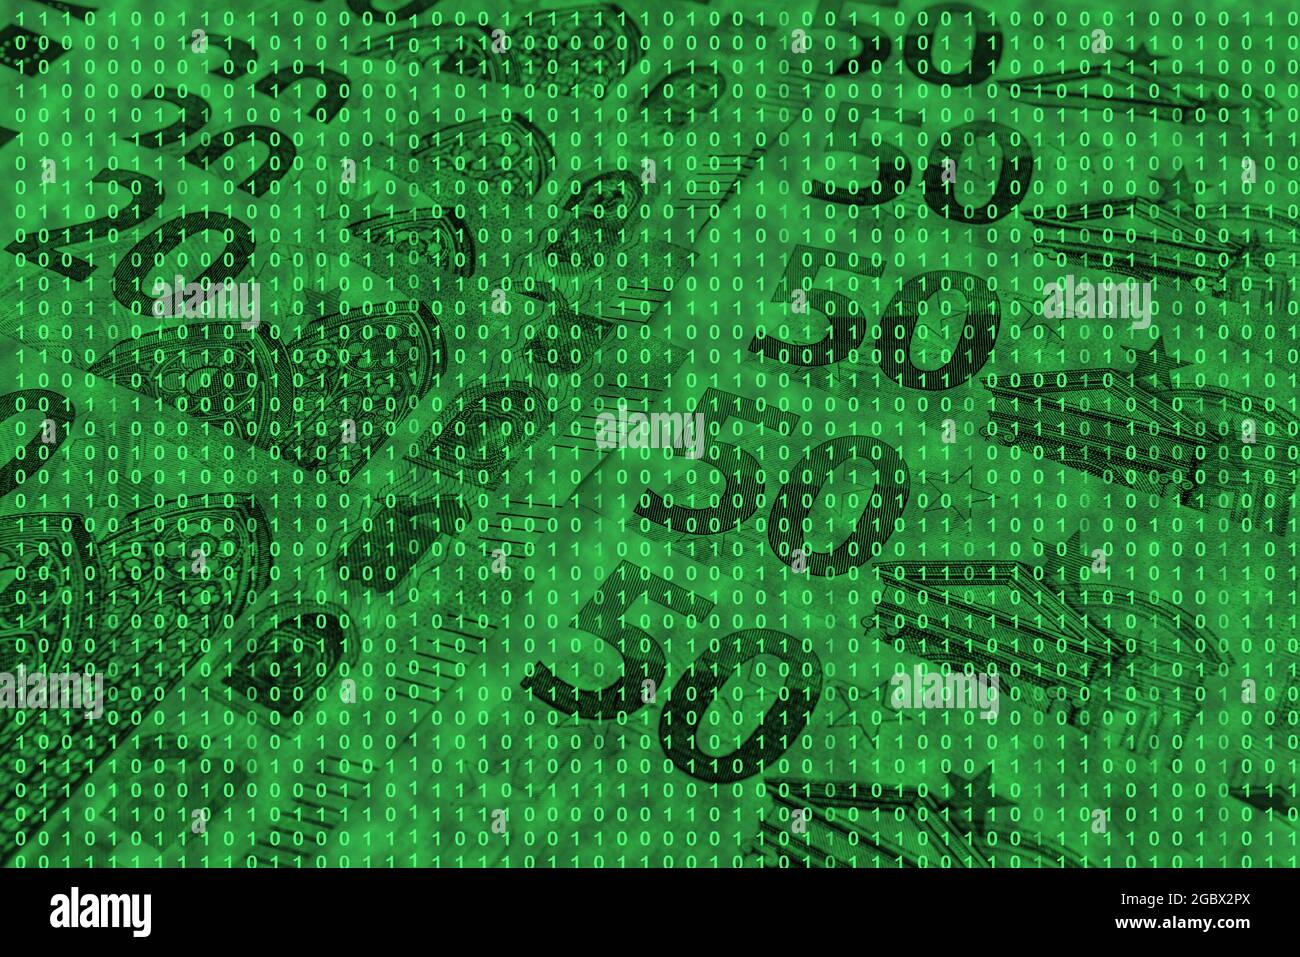 grille de code binaire à partir de nombres verts clairs sur le fond des  billets en euros, concept de commerce électronique Photo Stock - Alamy